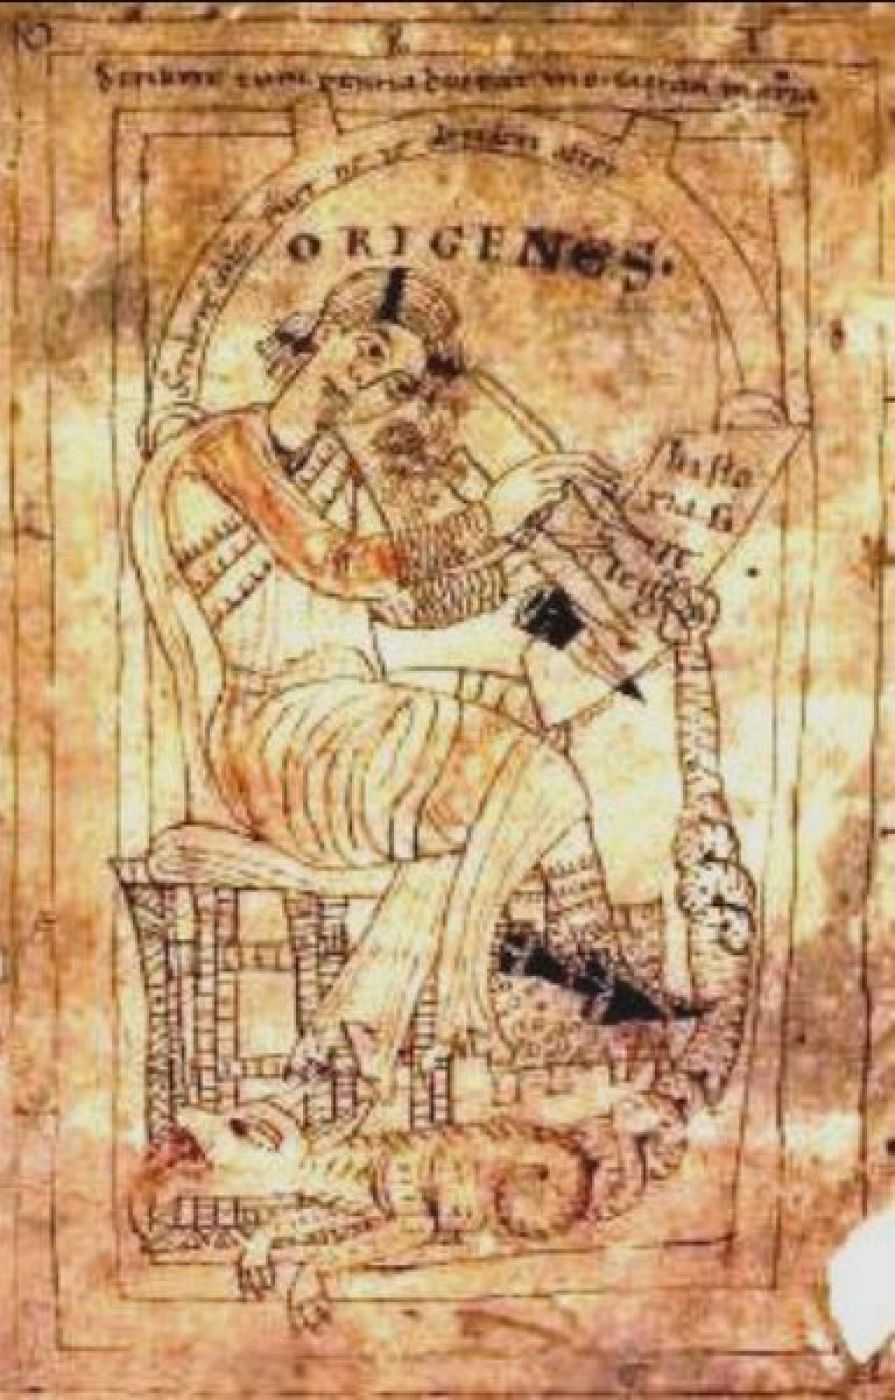 Orígenes, el filósofo y teólogo de Alejandría, en un manuscrito del año 1160